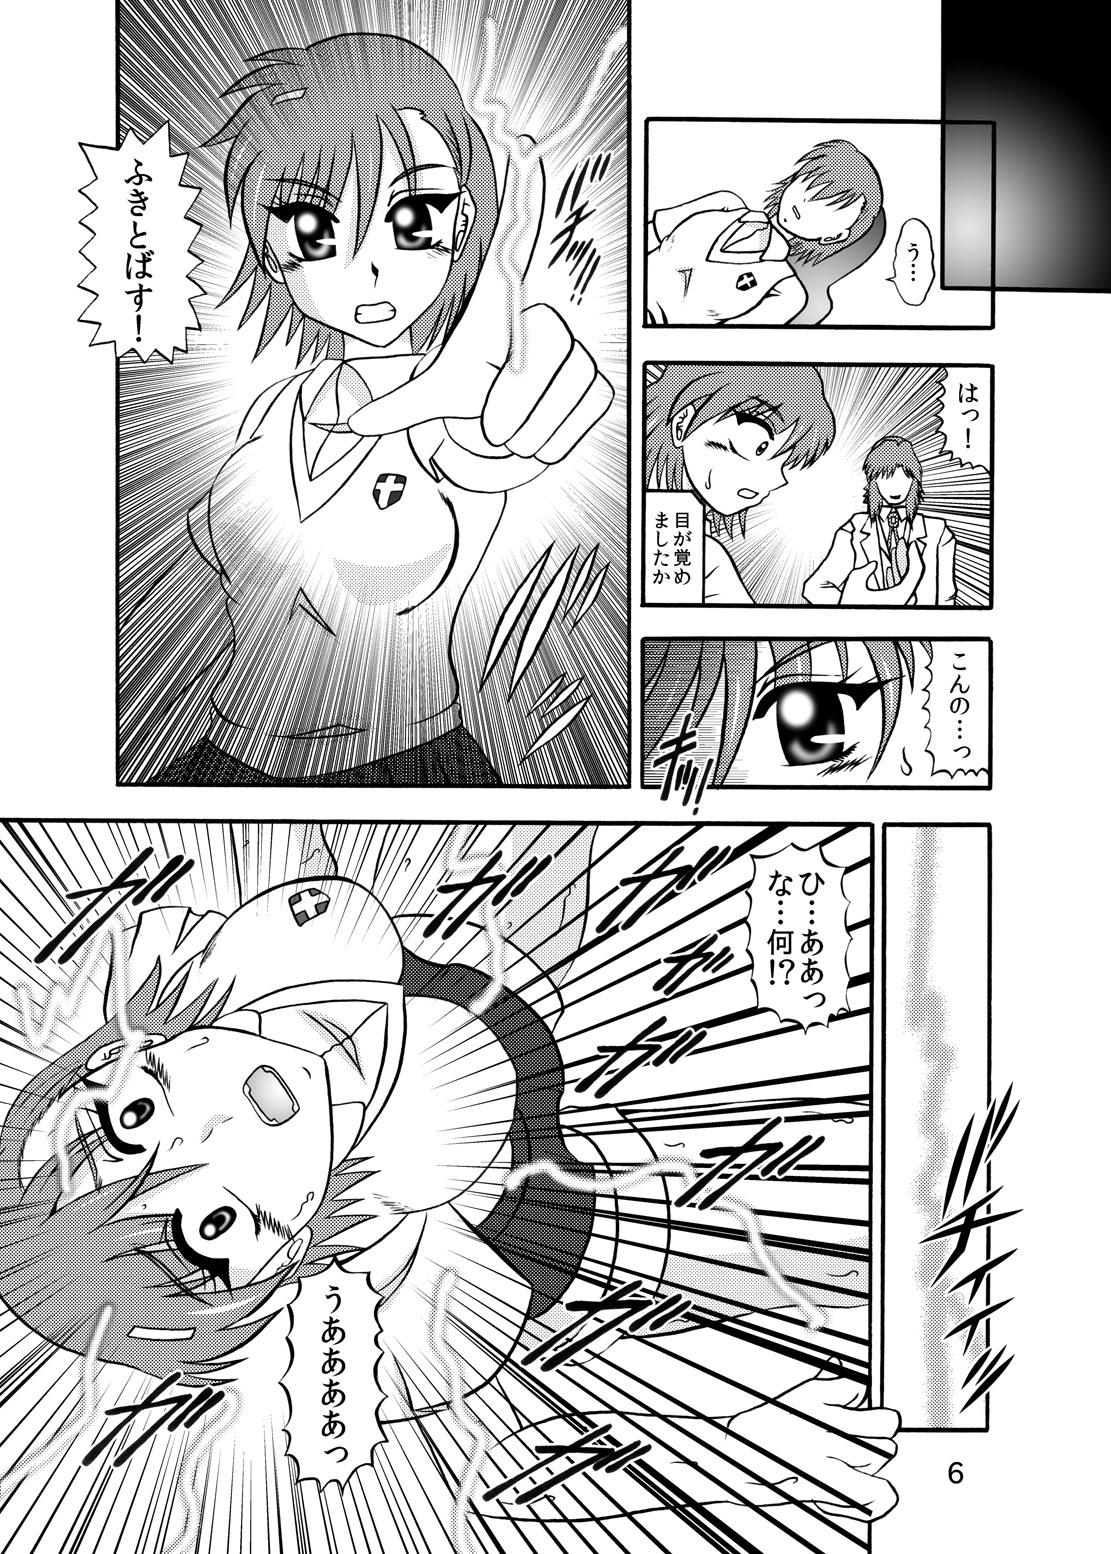 Long Inyoku Kaizou: Misaka Mikoto - Toaru kagaku no railgun Crossdresser - Page 4